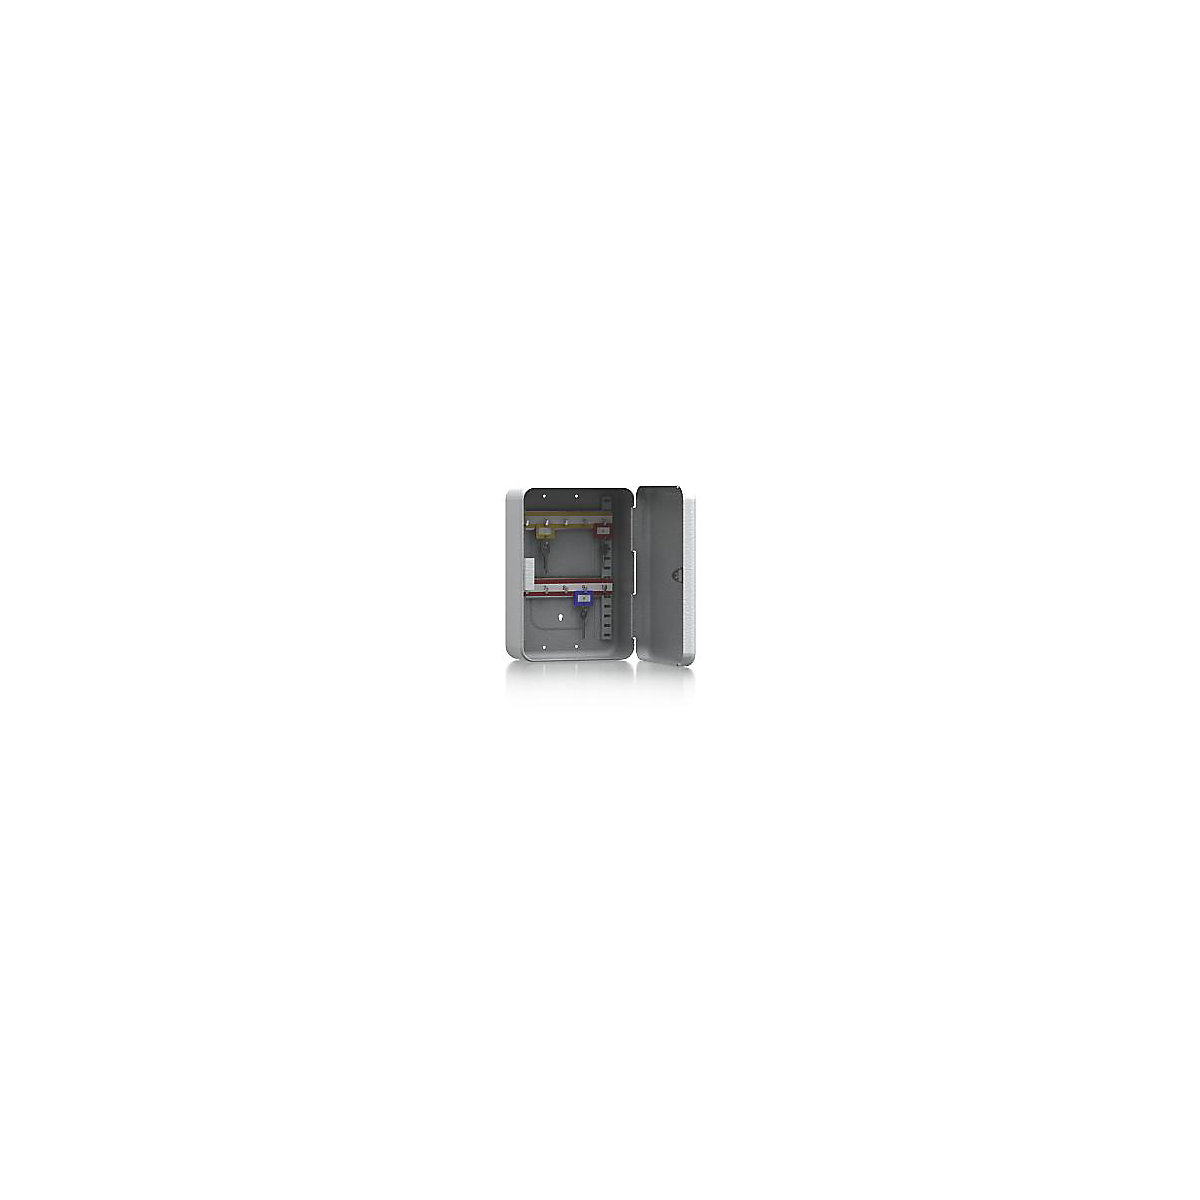 Kaseta za ključeve, čelični lim, u svijetlosivoj boji, VxŠxD 250 x 180 x 90 mm, 10 kuka-4